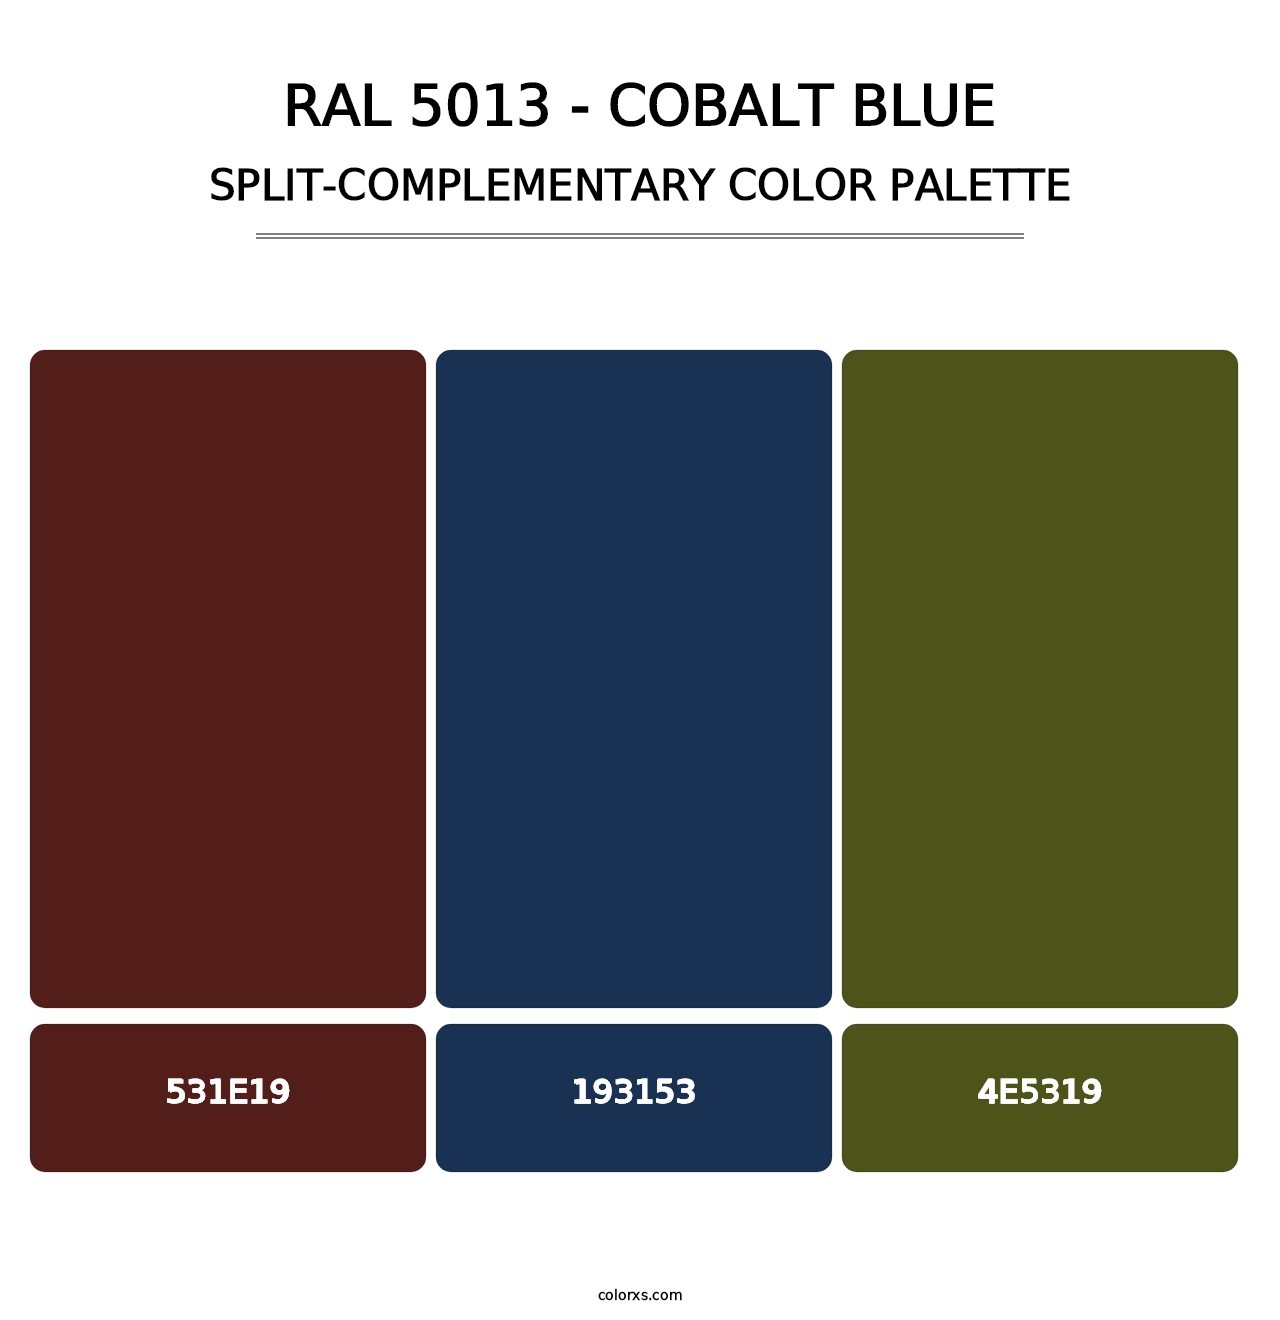 RAL 5013 - Cobalt Blue - Split-Complementary Color Palette